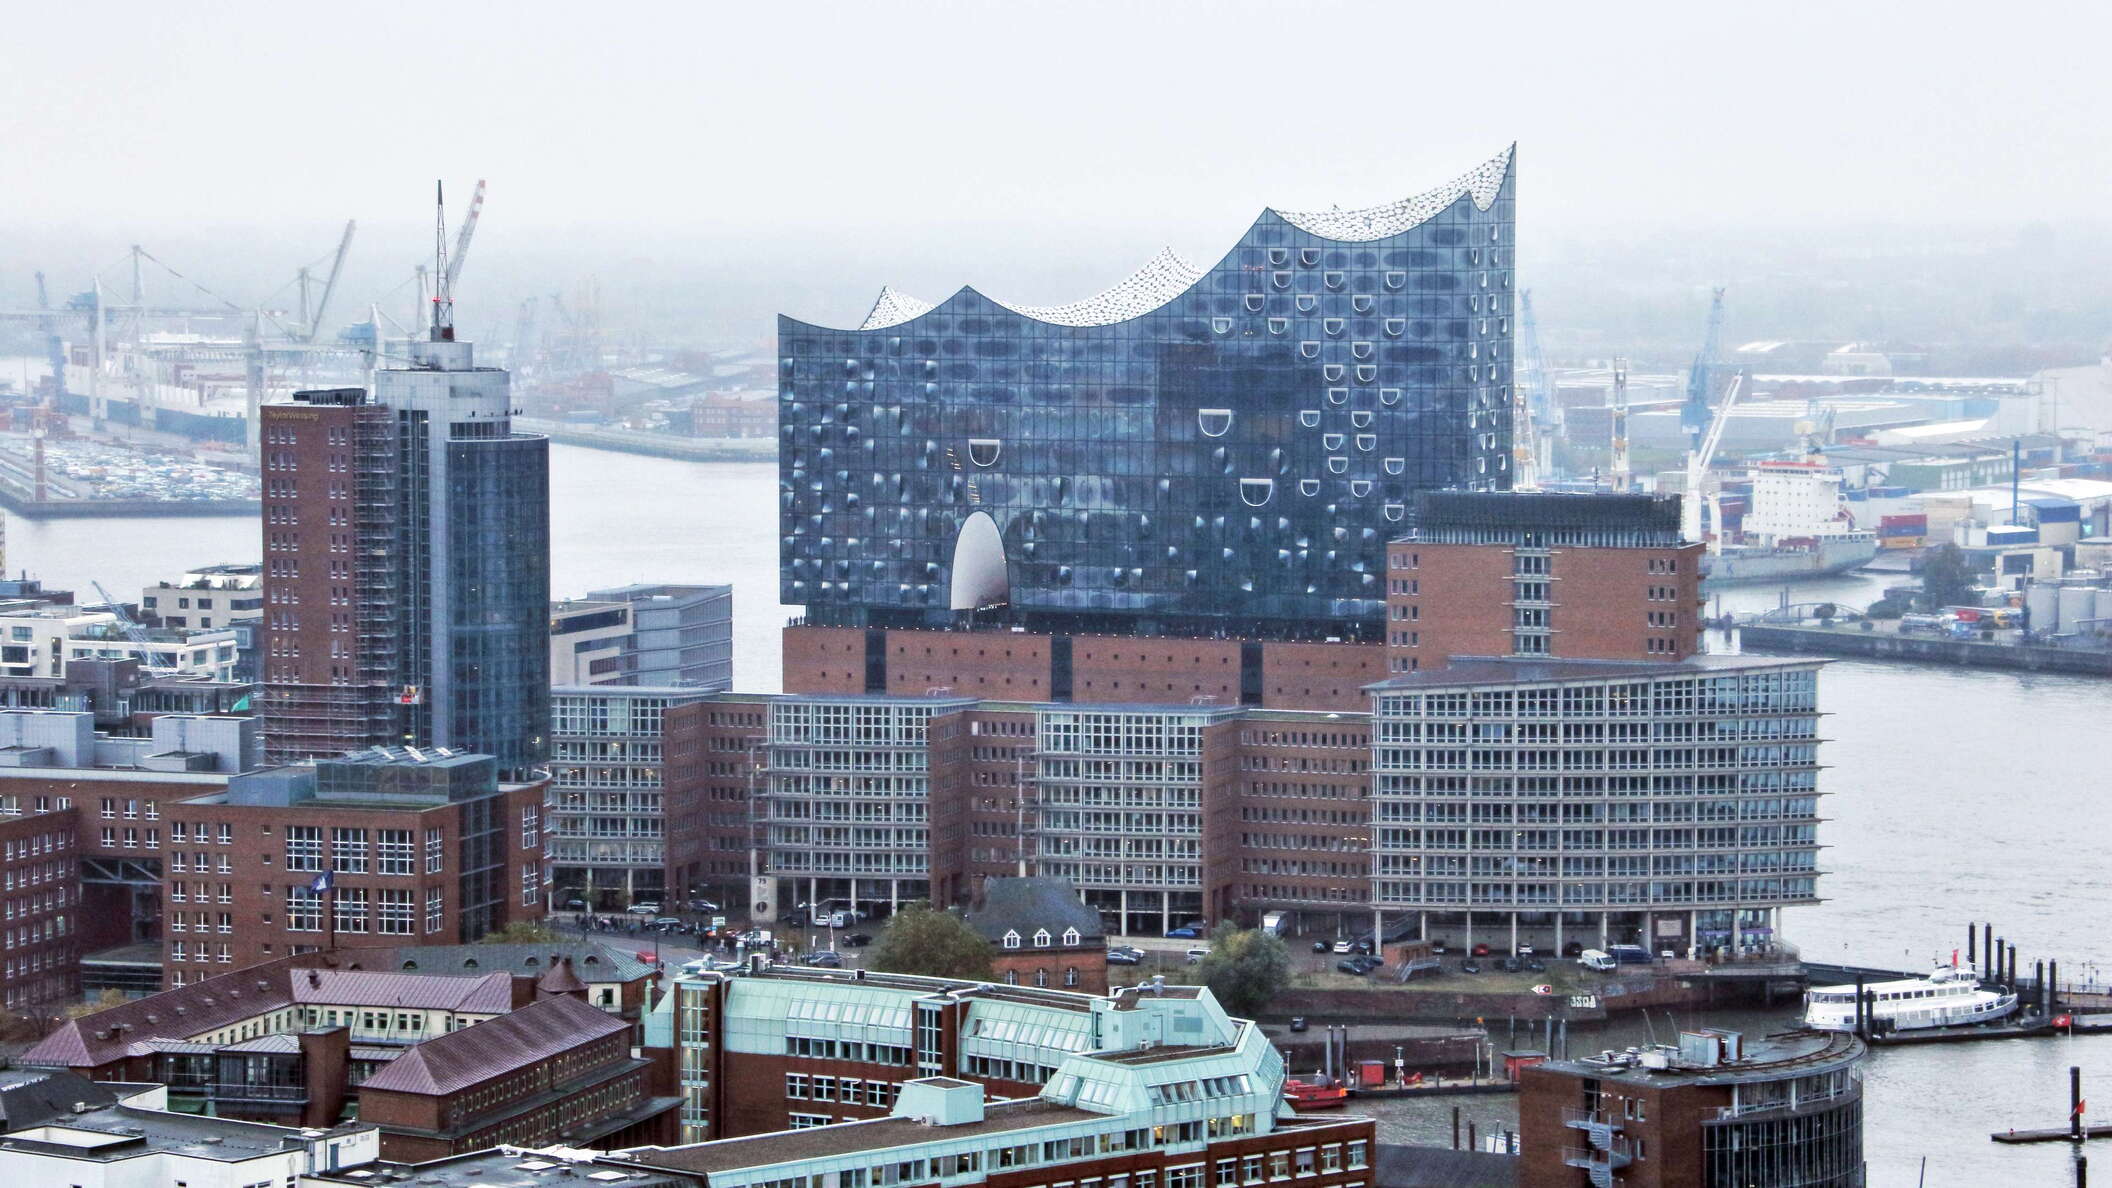 Hamburg | Elbphilharmonie